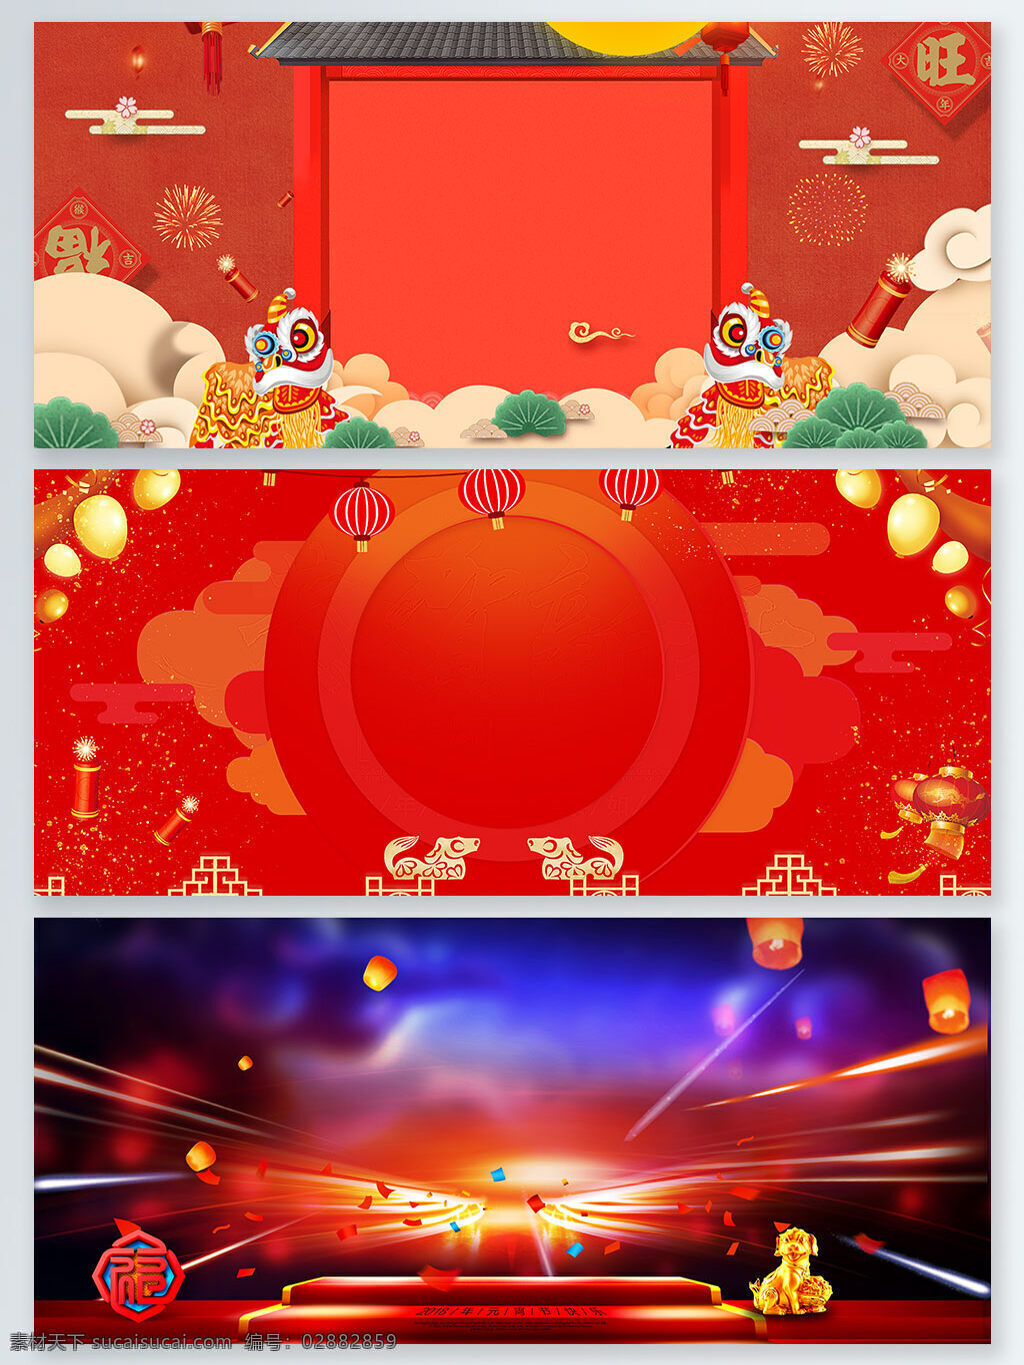 新年 中国 传统节日 喜庆 红色 广告 背景 鞭炮 大红灯笼 广告背景 几何 蓝色 舞狮 许愿灯 烟花 中国传统节日